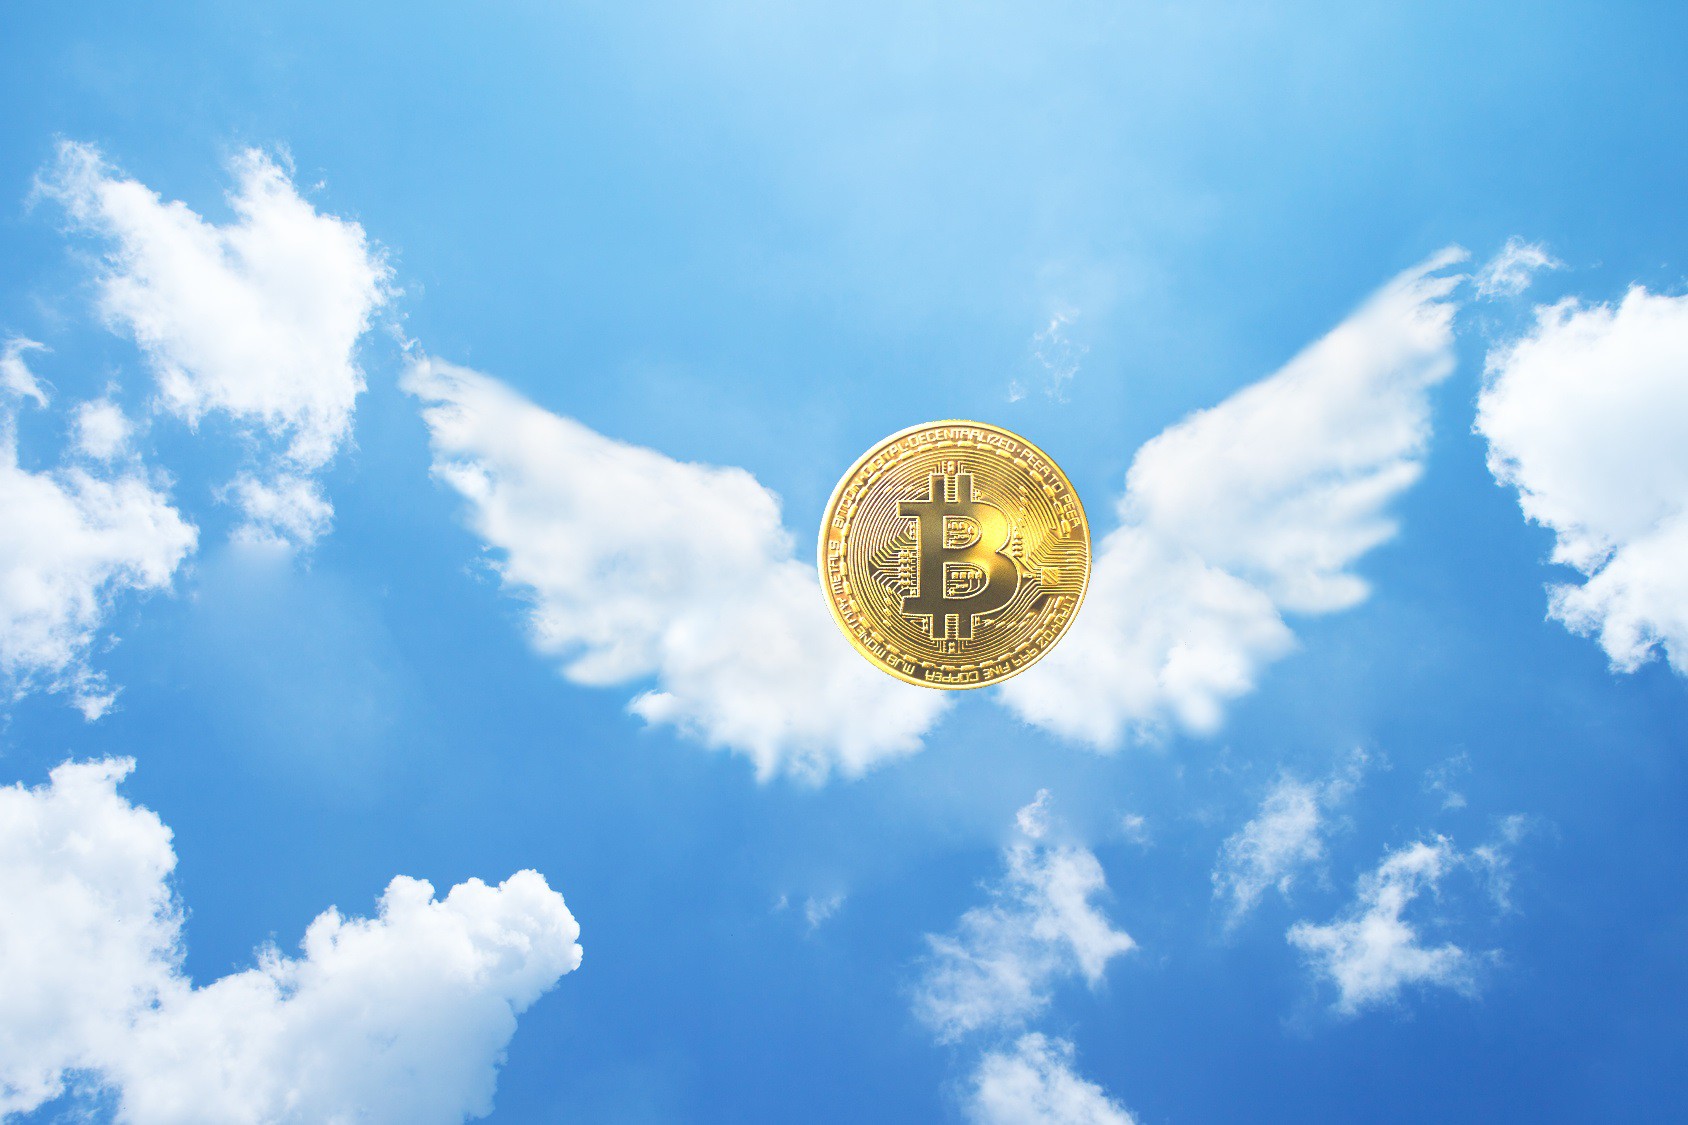 Die Zeugen Bitcoins im Krypto-Forum Bitcoins wittnesses religion god bitcoin